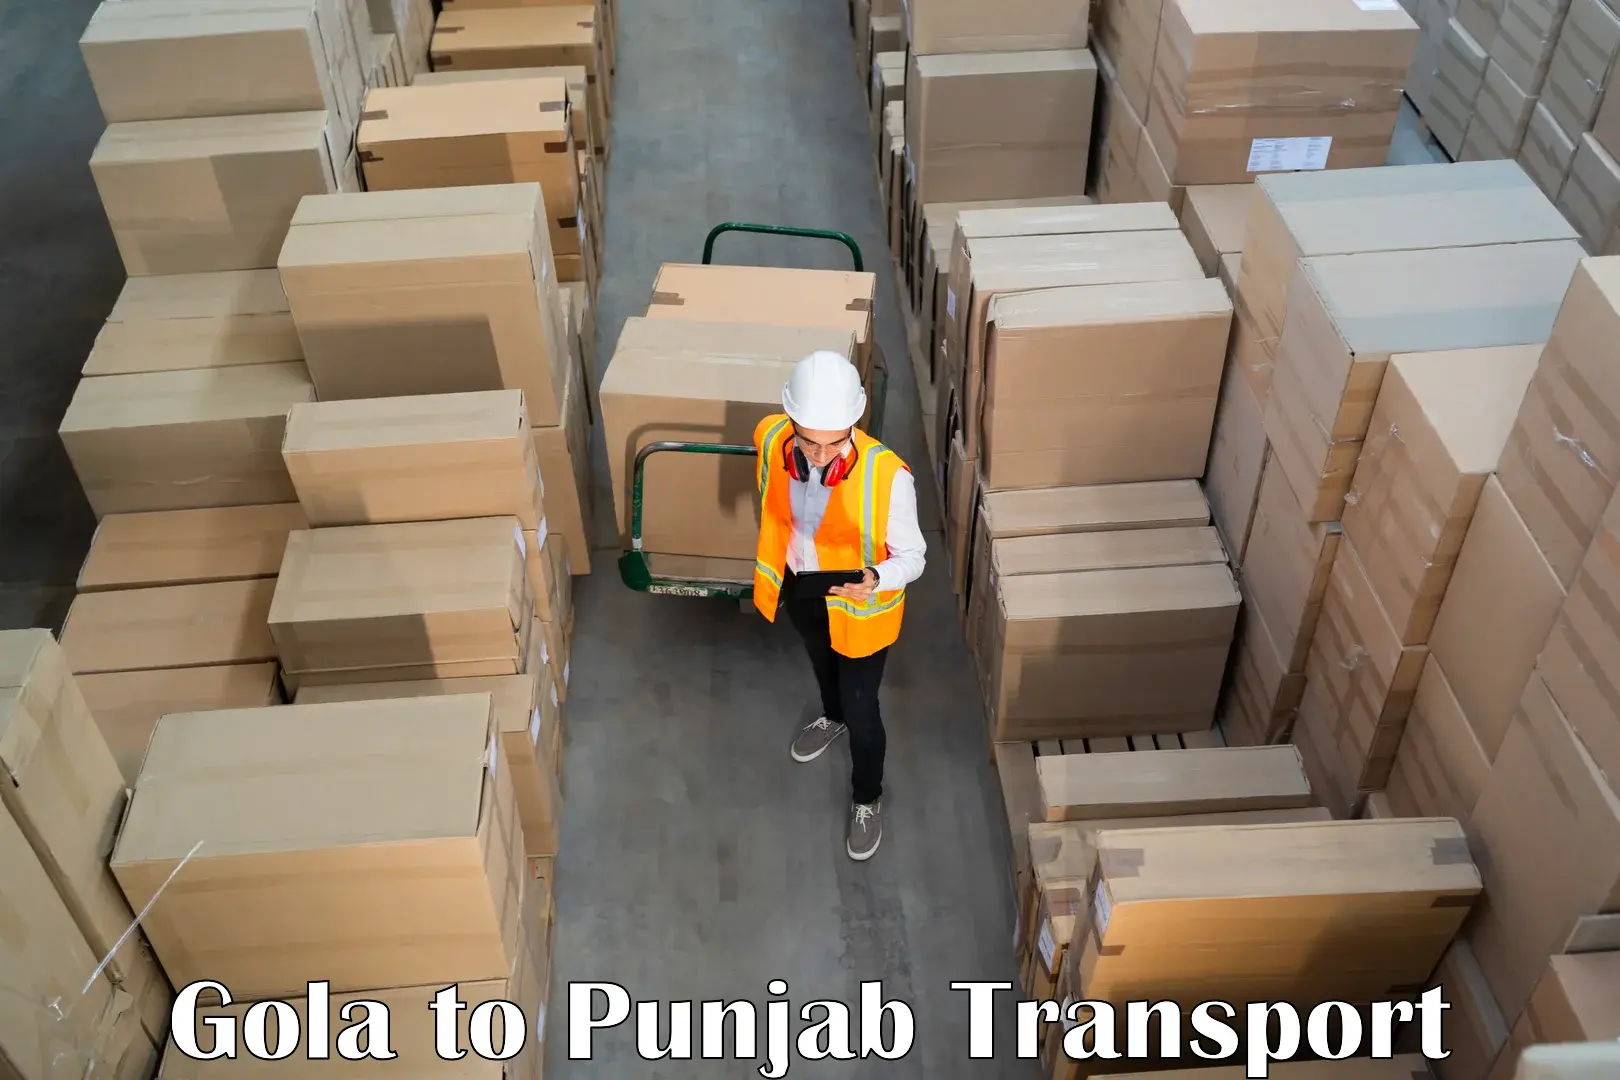 Online transport service Gola to Abohar